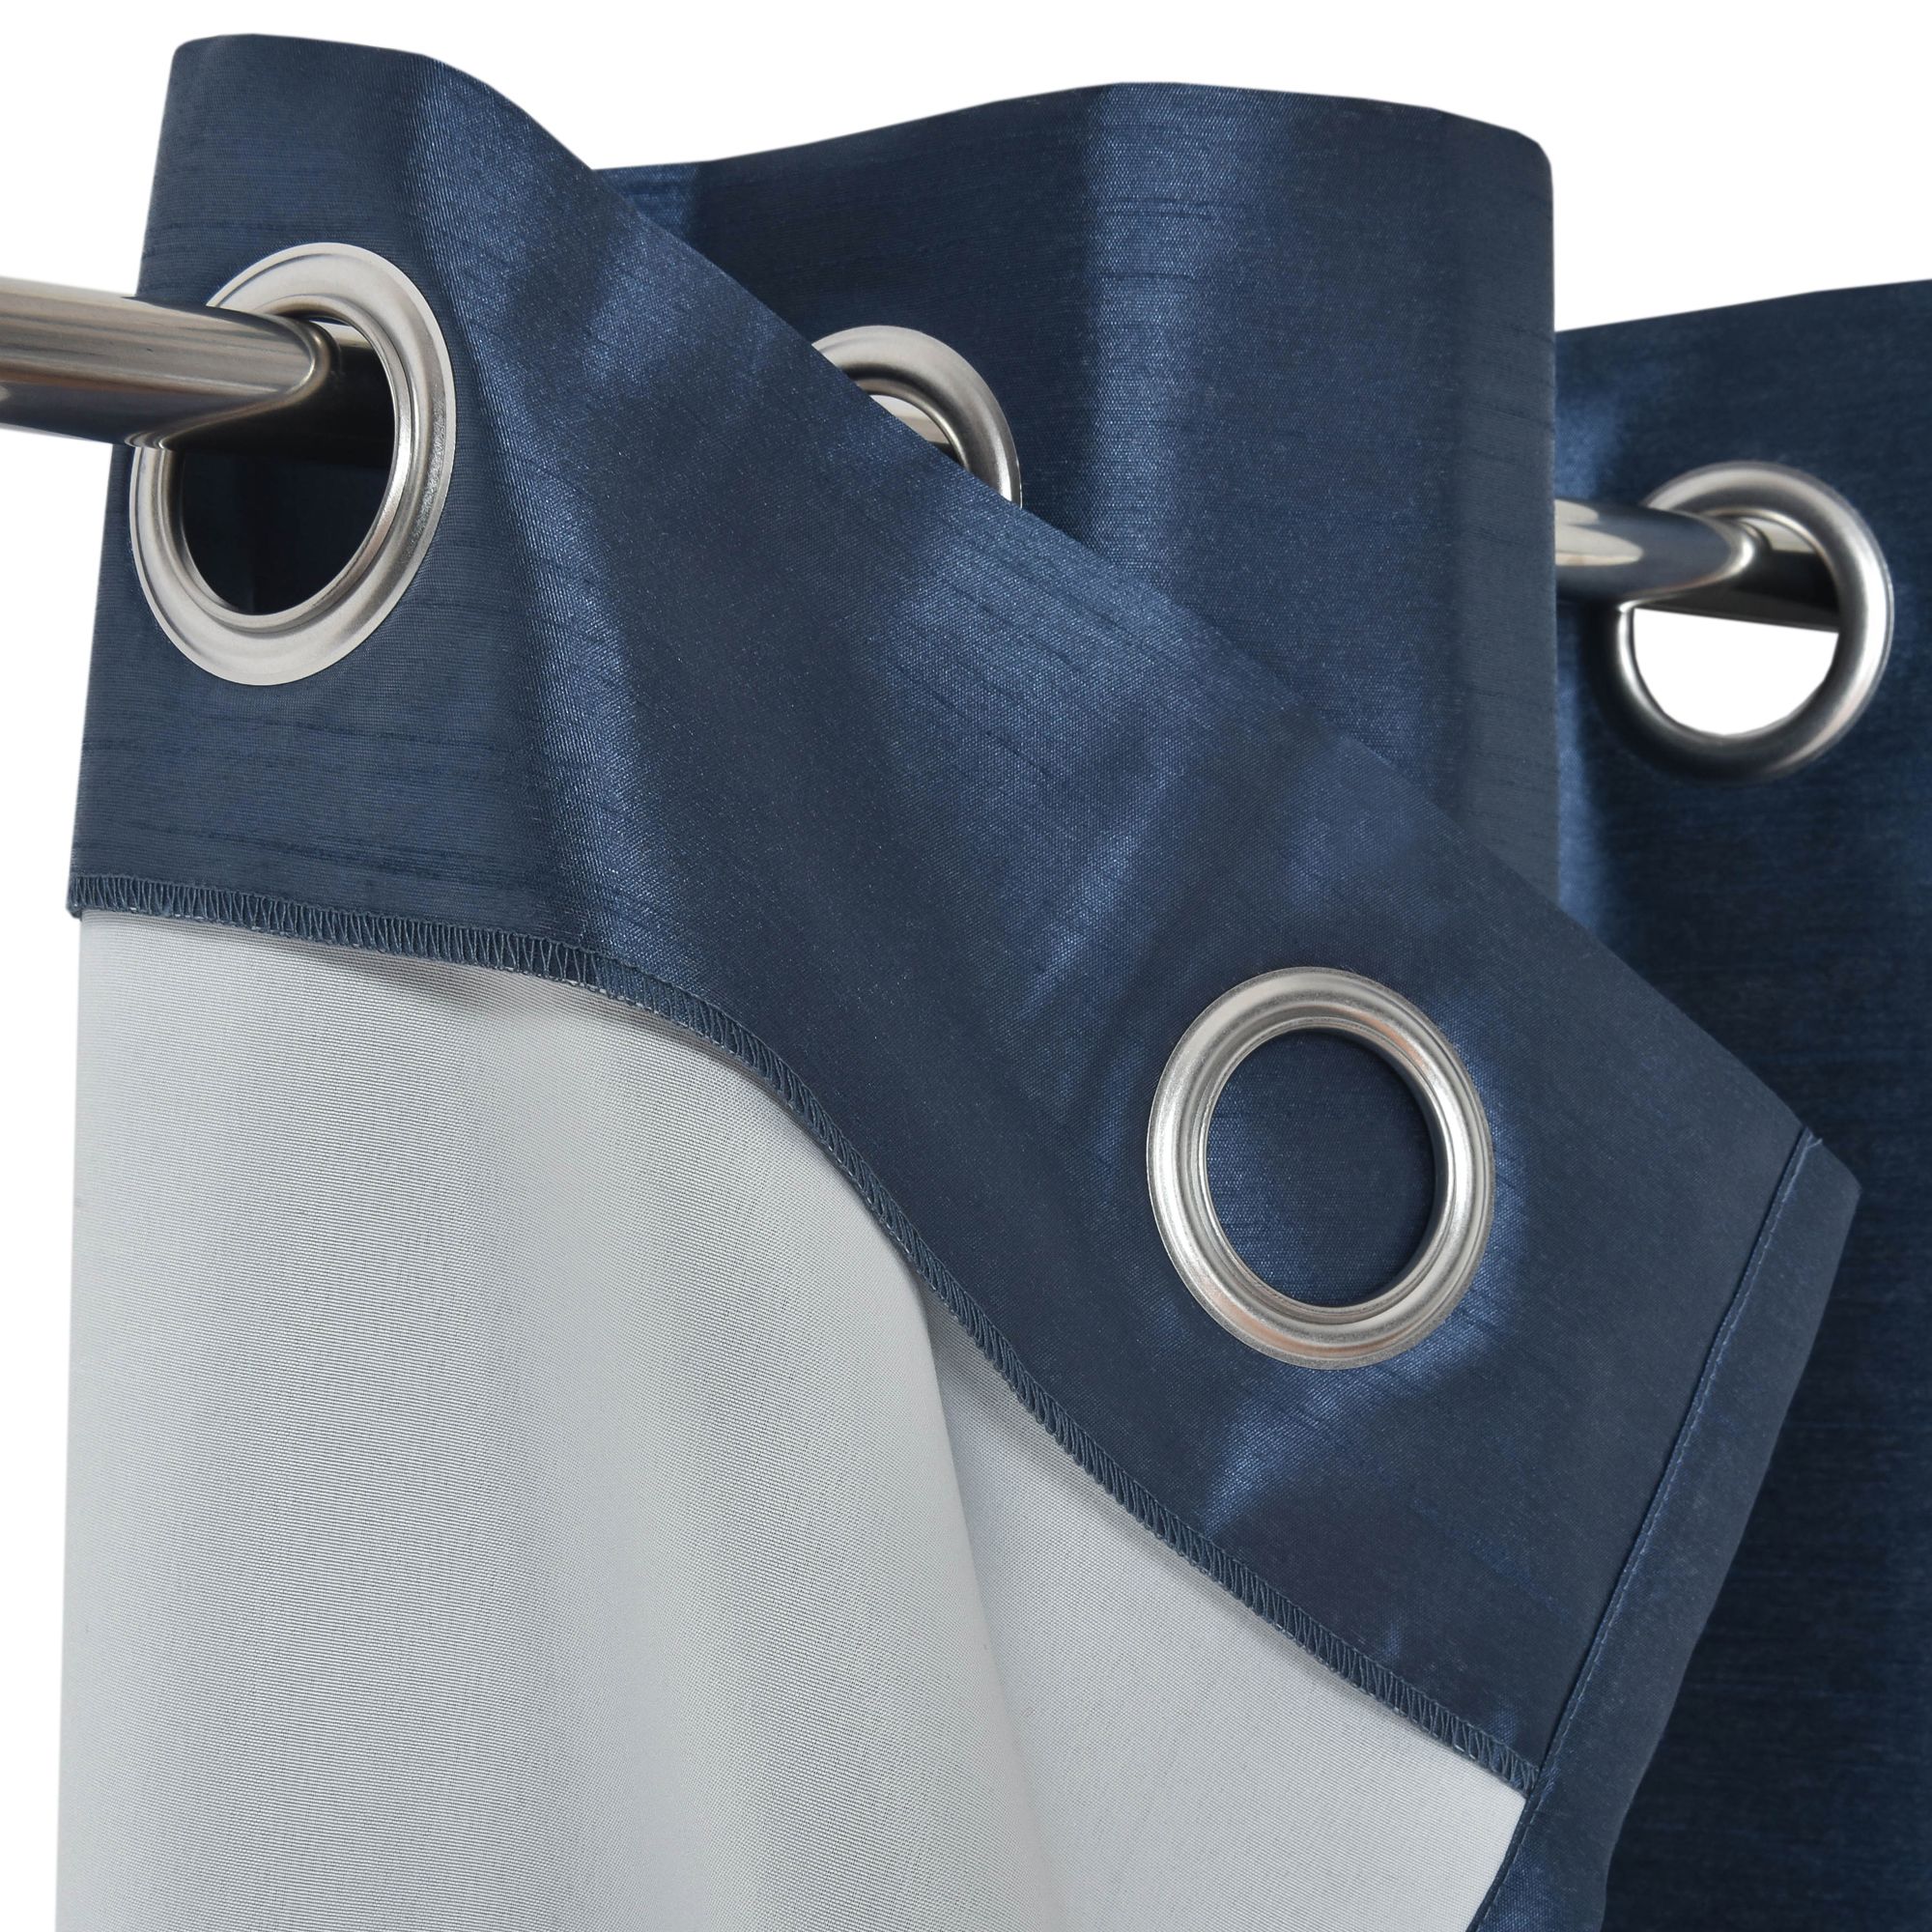 Morea Blue Plain woven Lined Eyelet Curtain (W)167cm (L)228cm, Pair